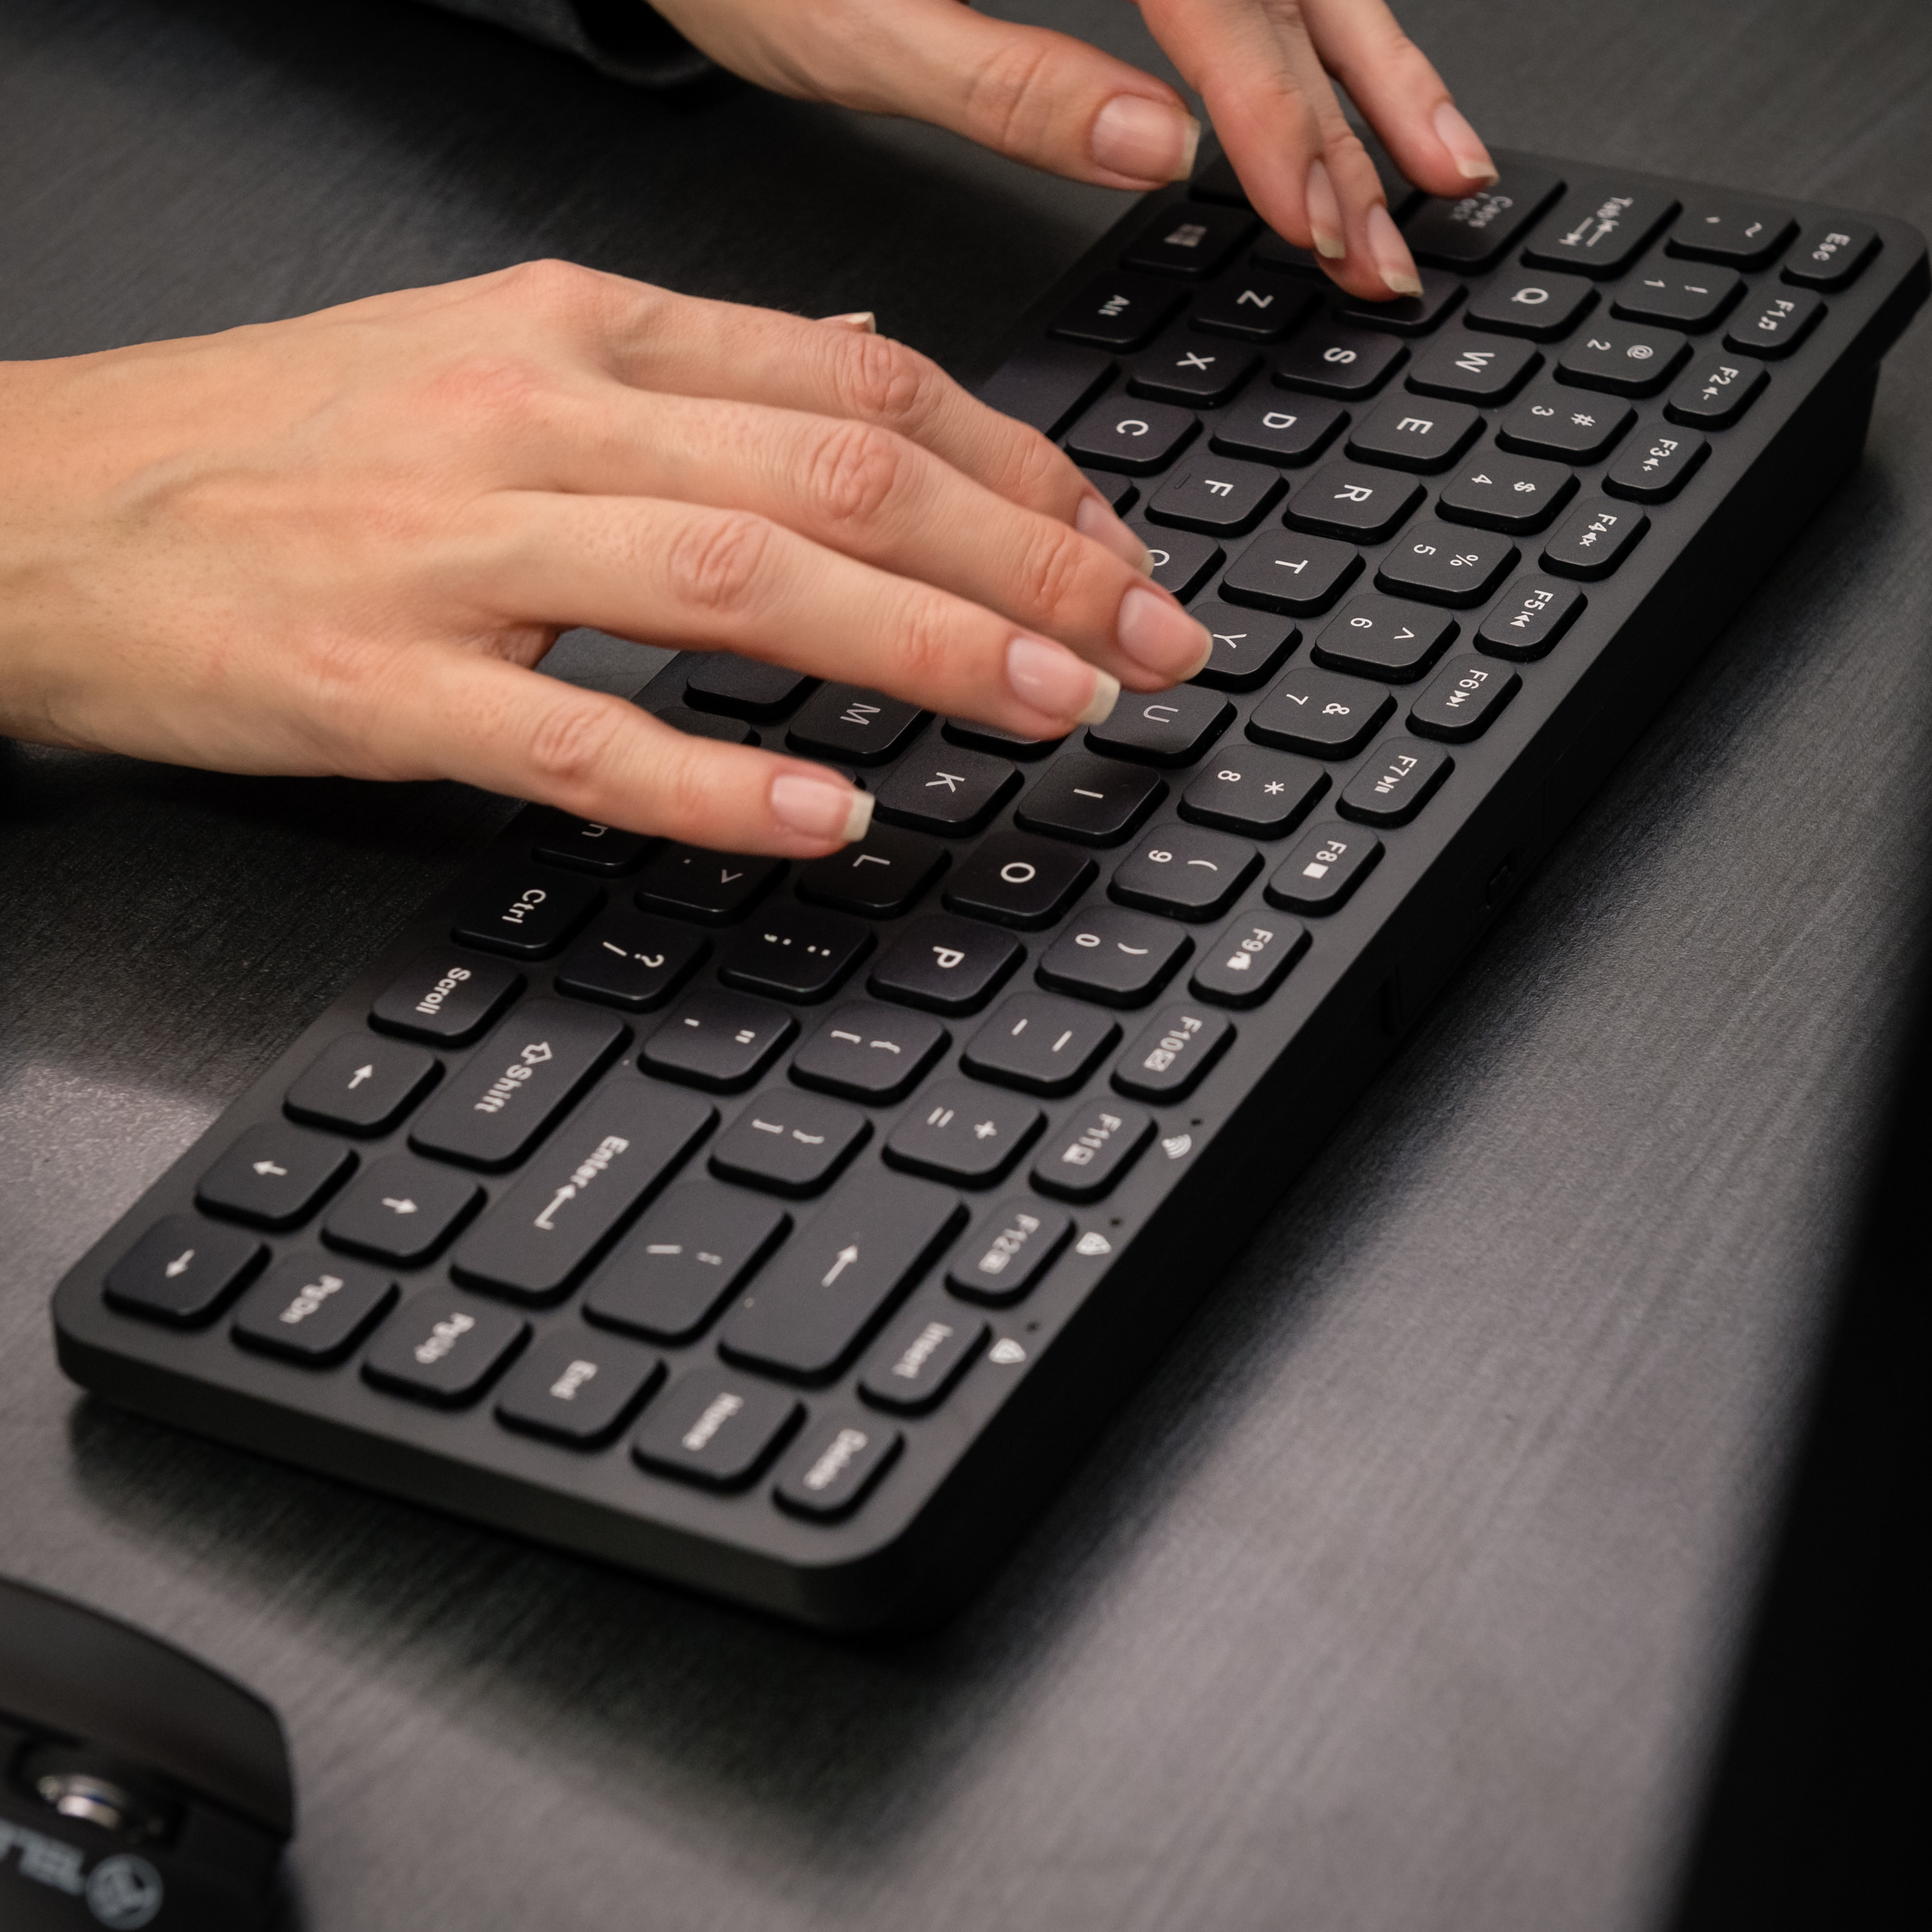 Mini Tastatur kabellose, TELLUR